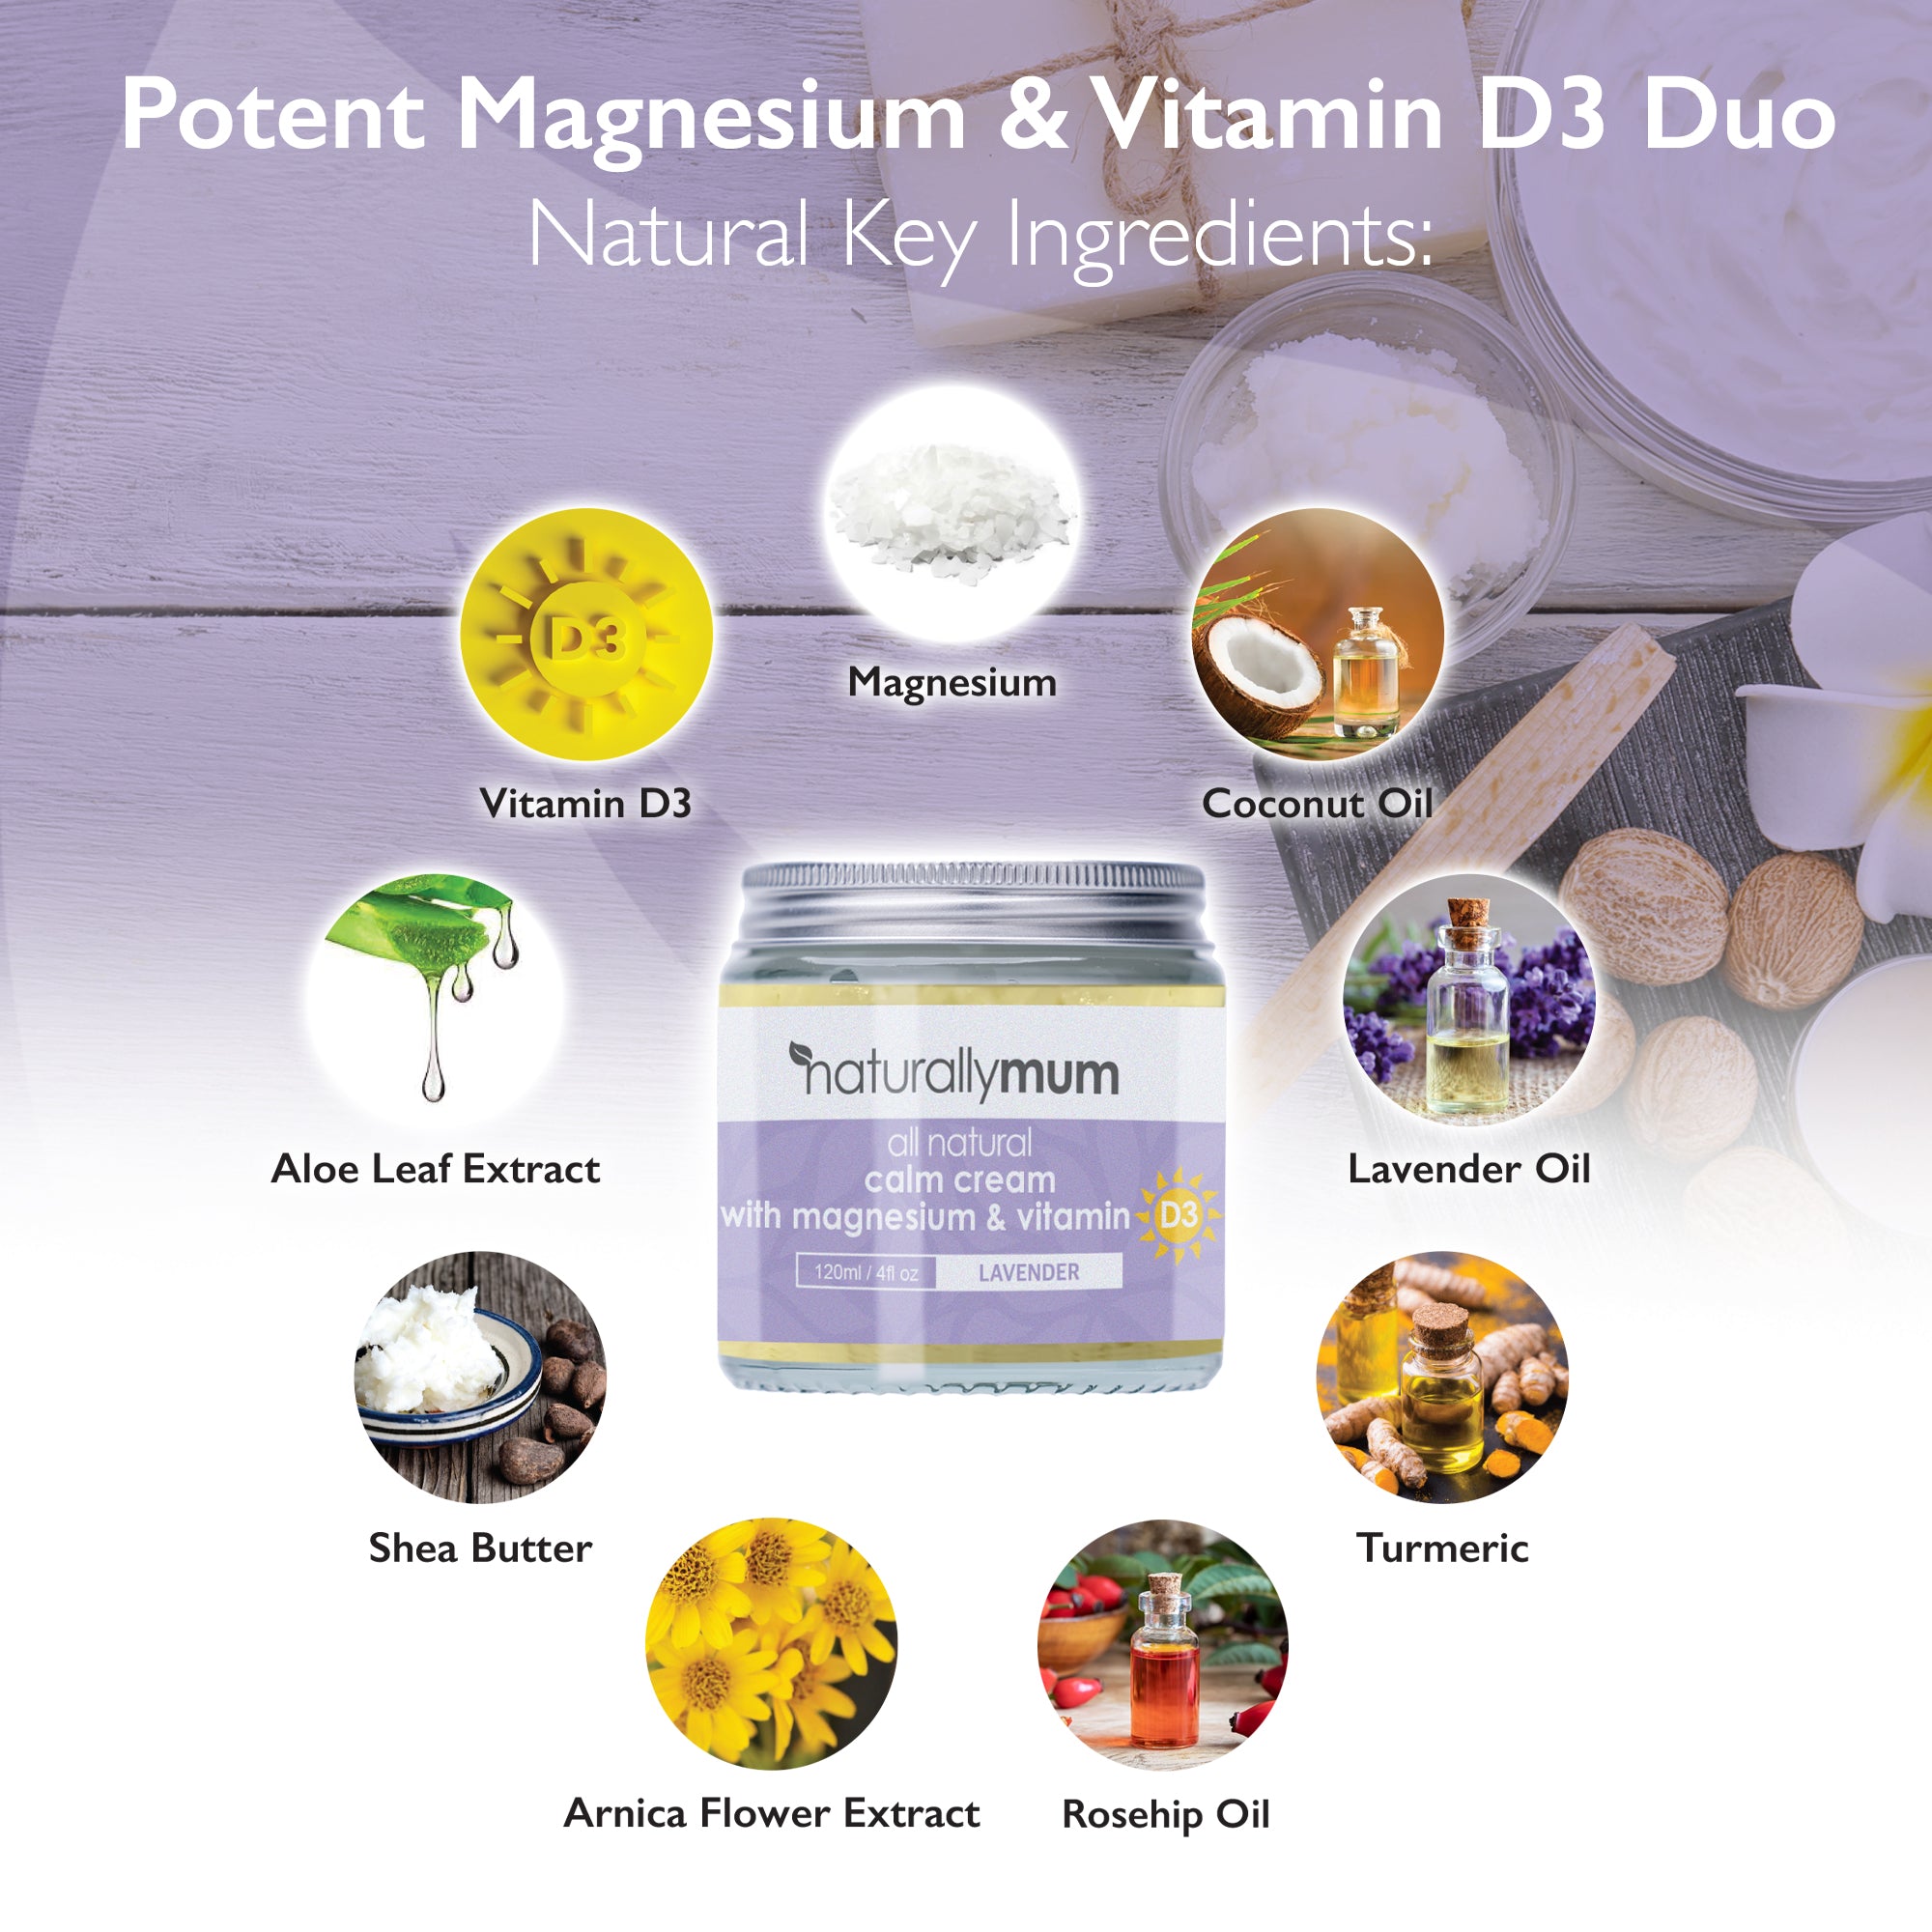 Calm Cream with Magnesium and Vitamin D | Lavender | 120ml